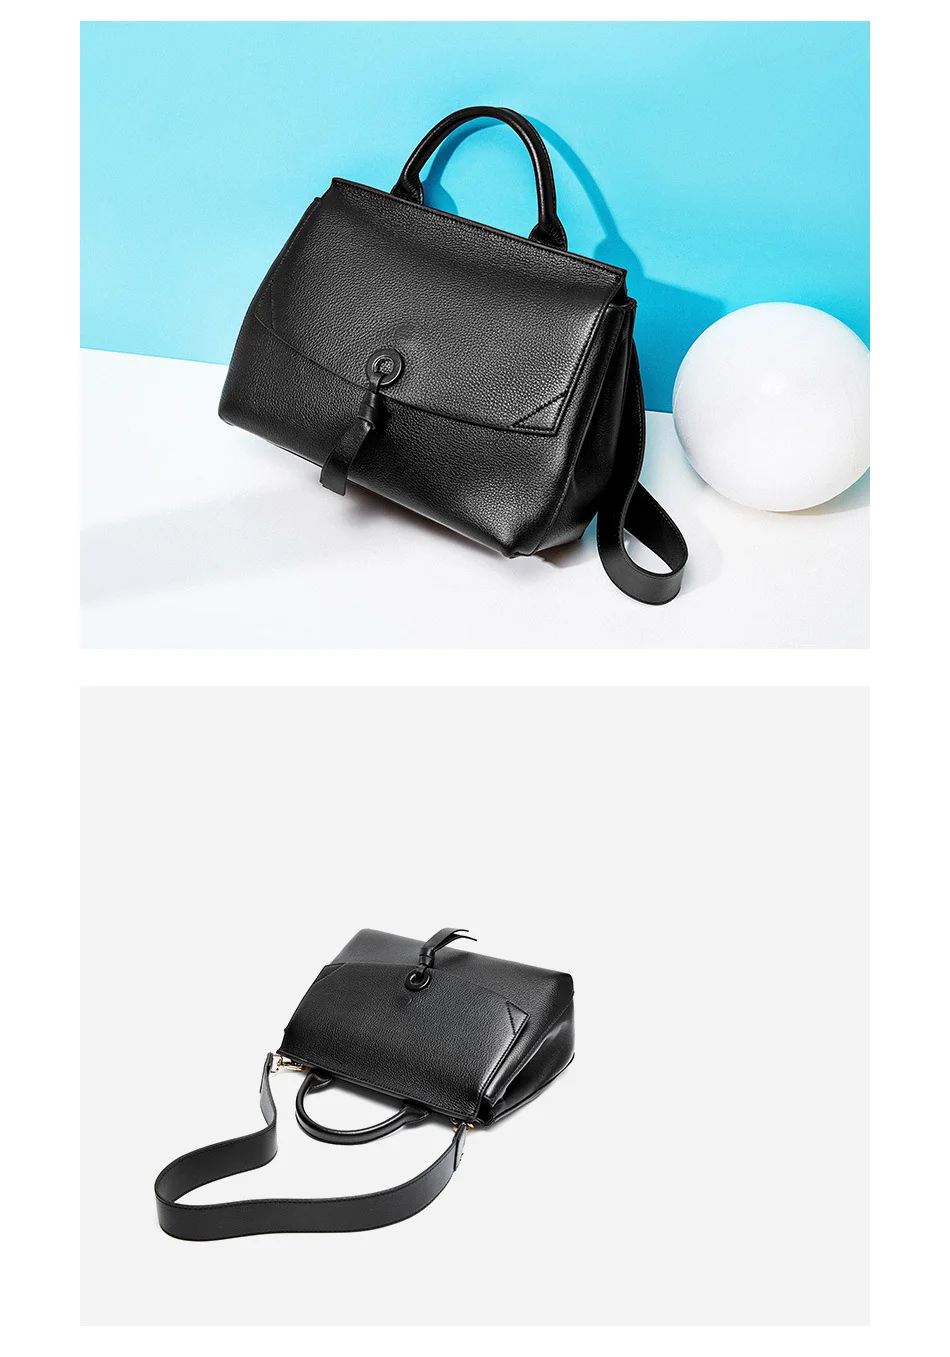 Zency, Новое поступление, женская сумка-тоут, натуральная кожа, Классическая, черная, модная, женская сумка через плечо, сумка-мессенджер, серый портфель, сумки